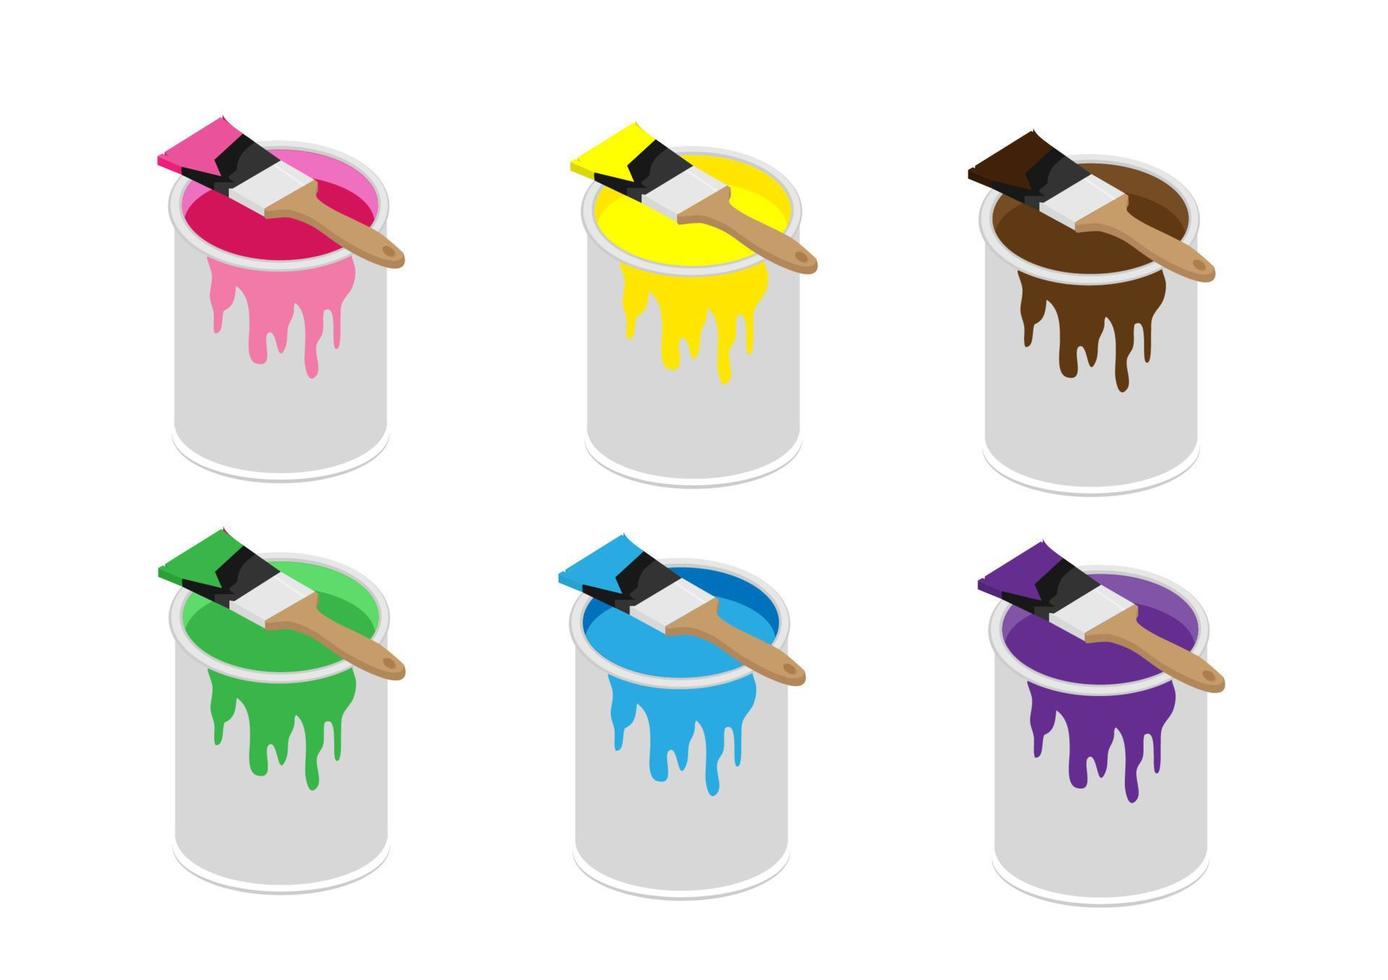 Farbdosen aus Metall, erhältlich in Pink, Grün, Violett, Braun, Gelb und Blau mit Holzgriffbürsten. Cartoon-Illustrationsvektor im flachen Stil vektor